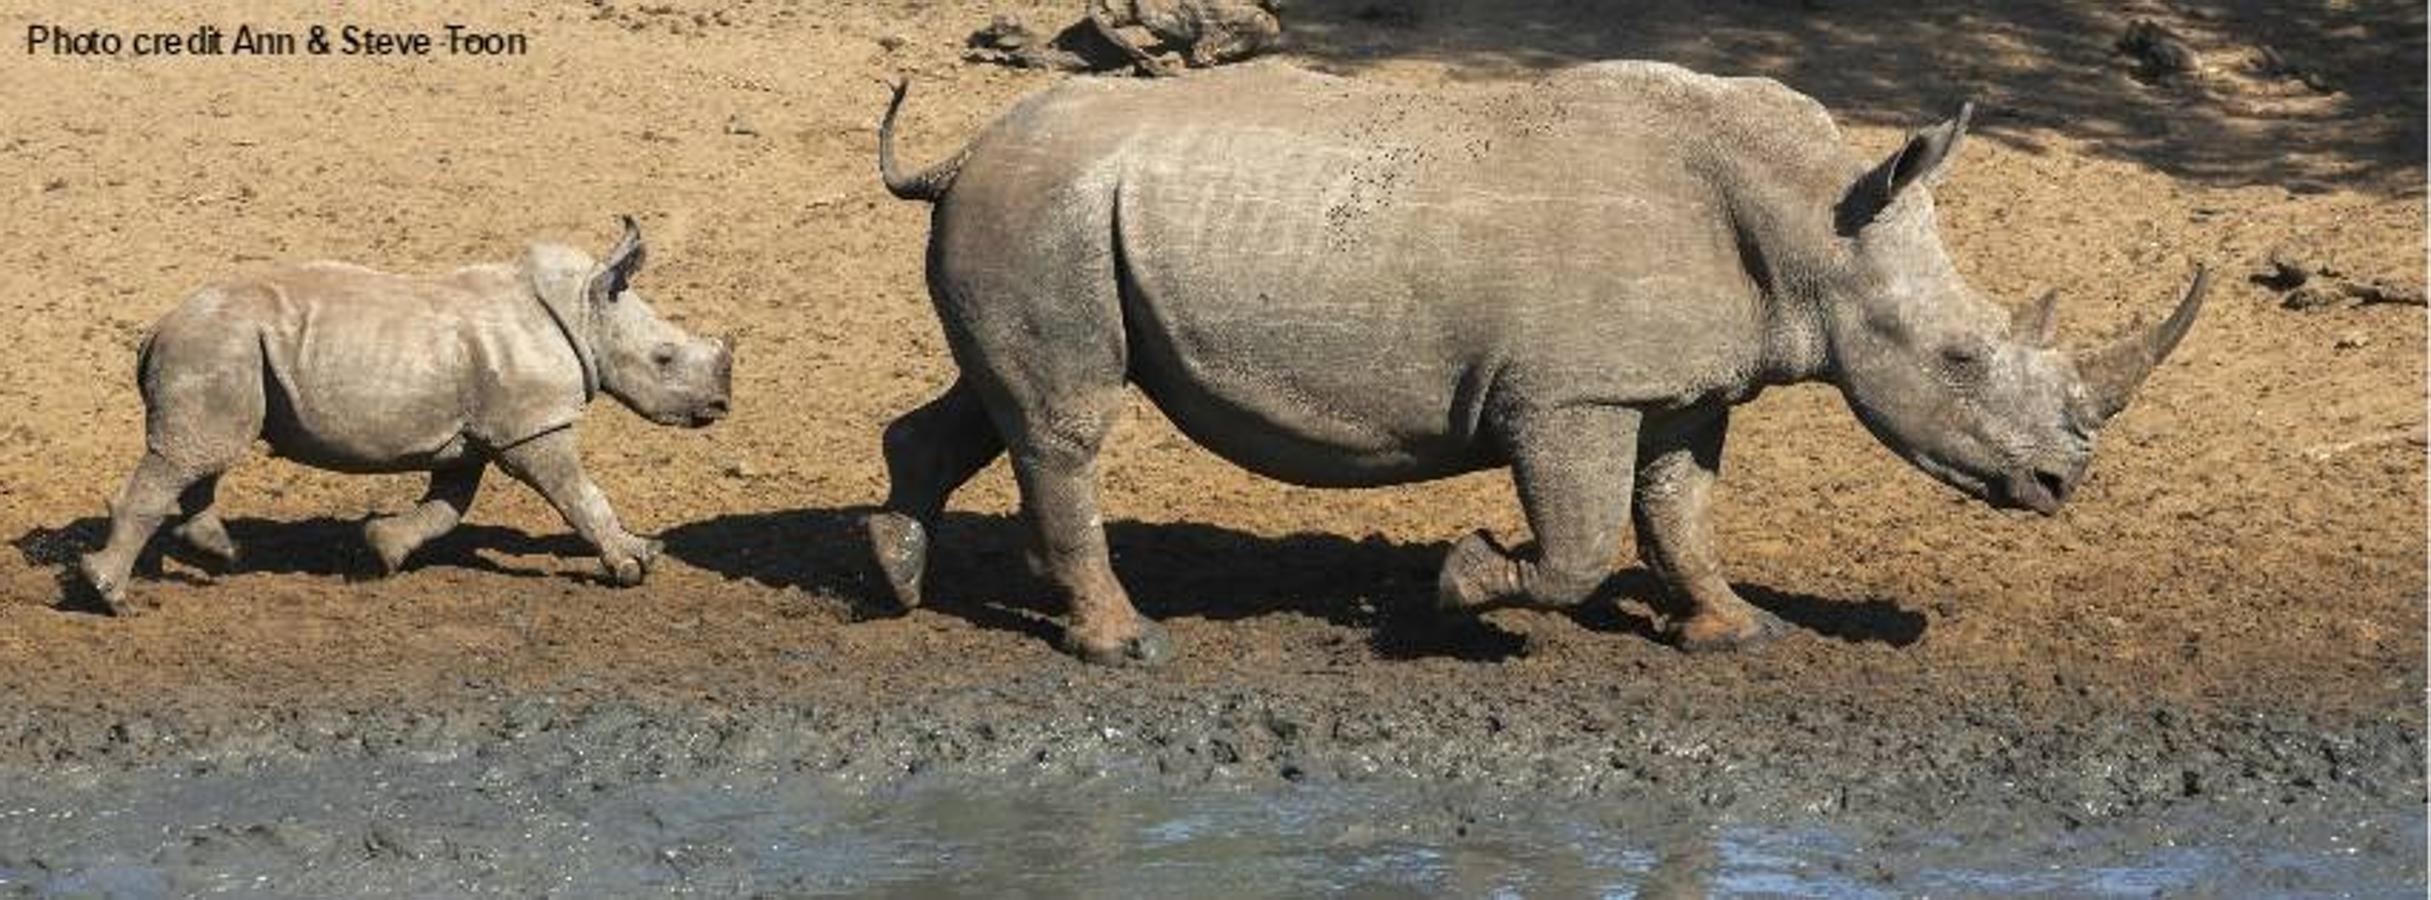 Tres rinocerontes menos cada día. Sudáfrica, que alberga el 79% de los últimos rinocerontes de África, es el país más afectado por el furtivismo, que sufre el 91% de las pérdidas por caza furtiva conocidas en 2016 en el continente.